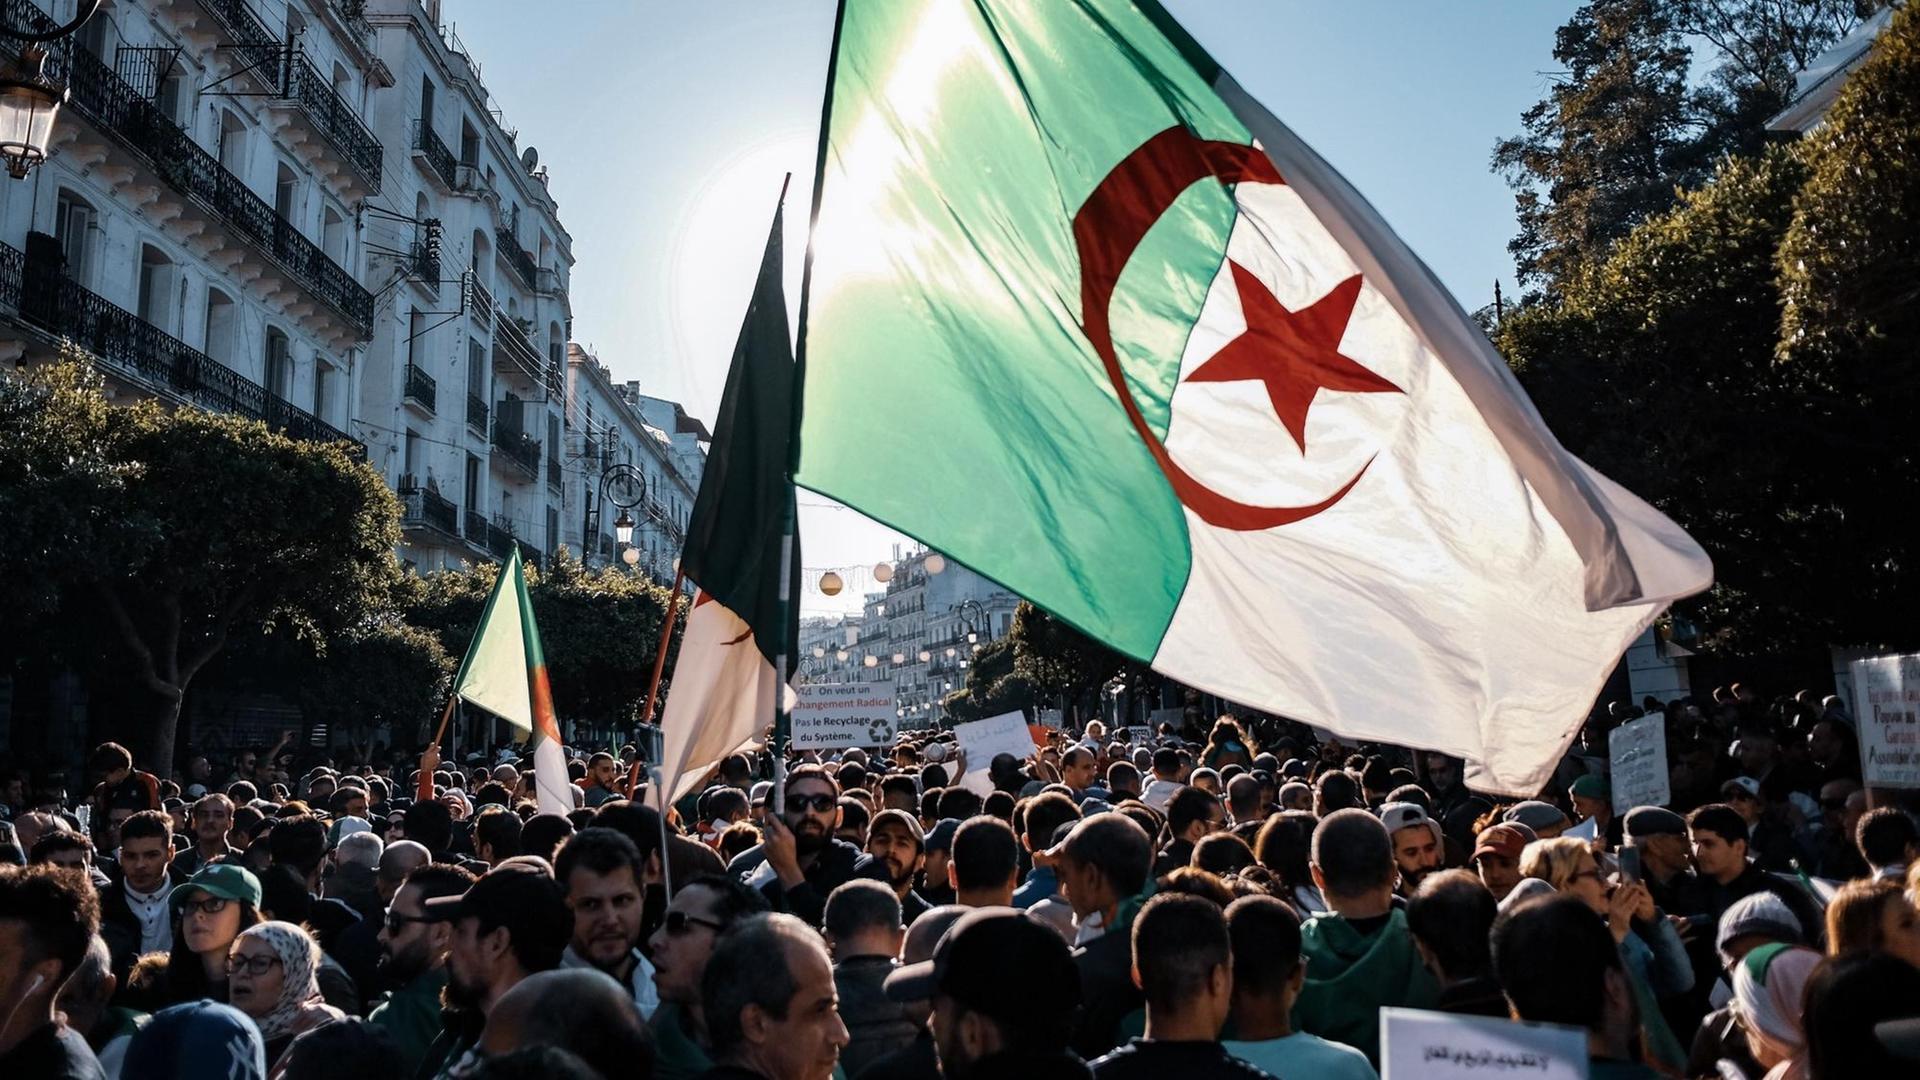 Freitagsdemonstration der Hirak-Protestbewegung in Algier, Algerien